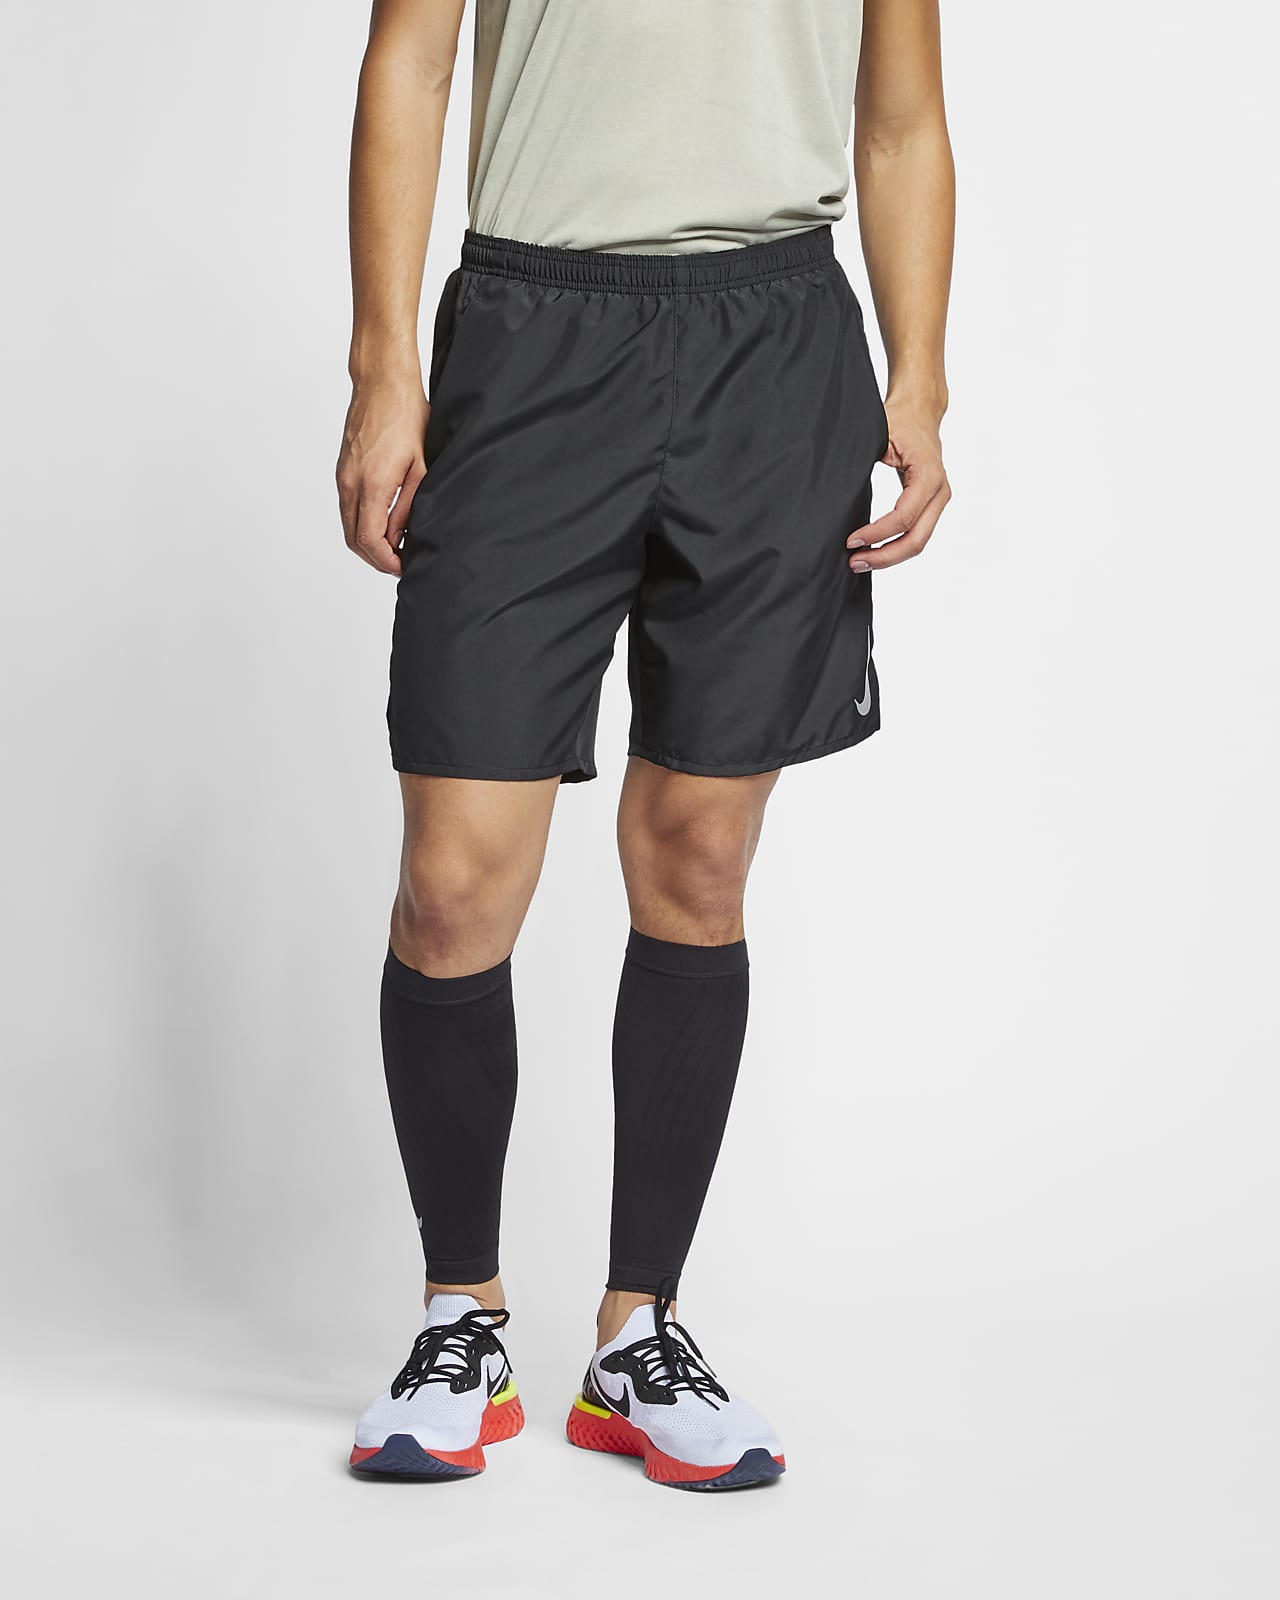 Short de running avec sous-short intégré Nike Challenger 23 cm pour Homme